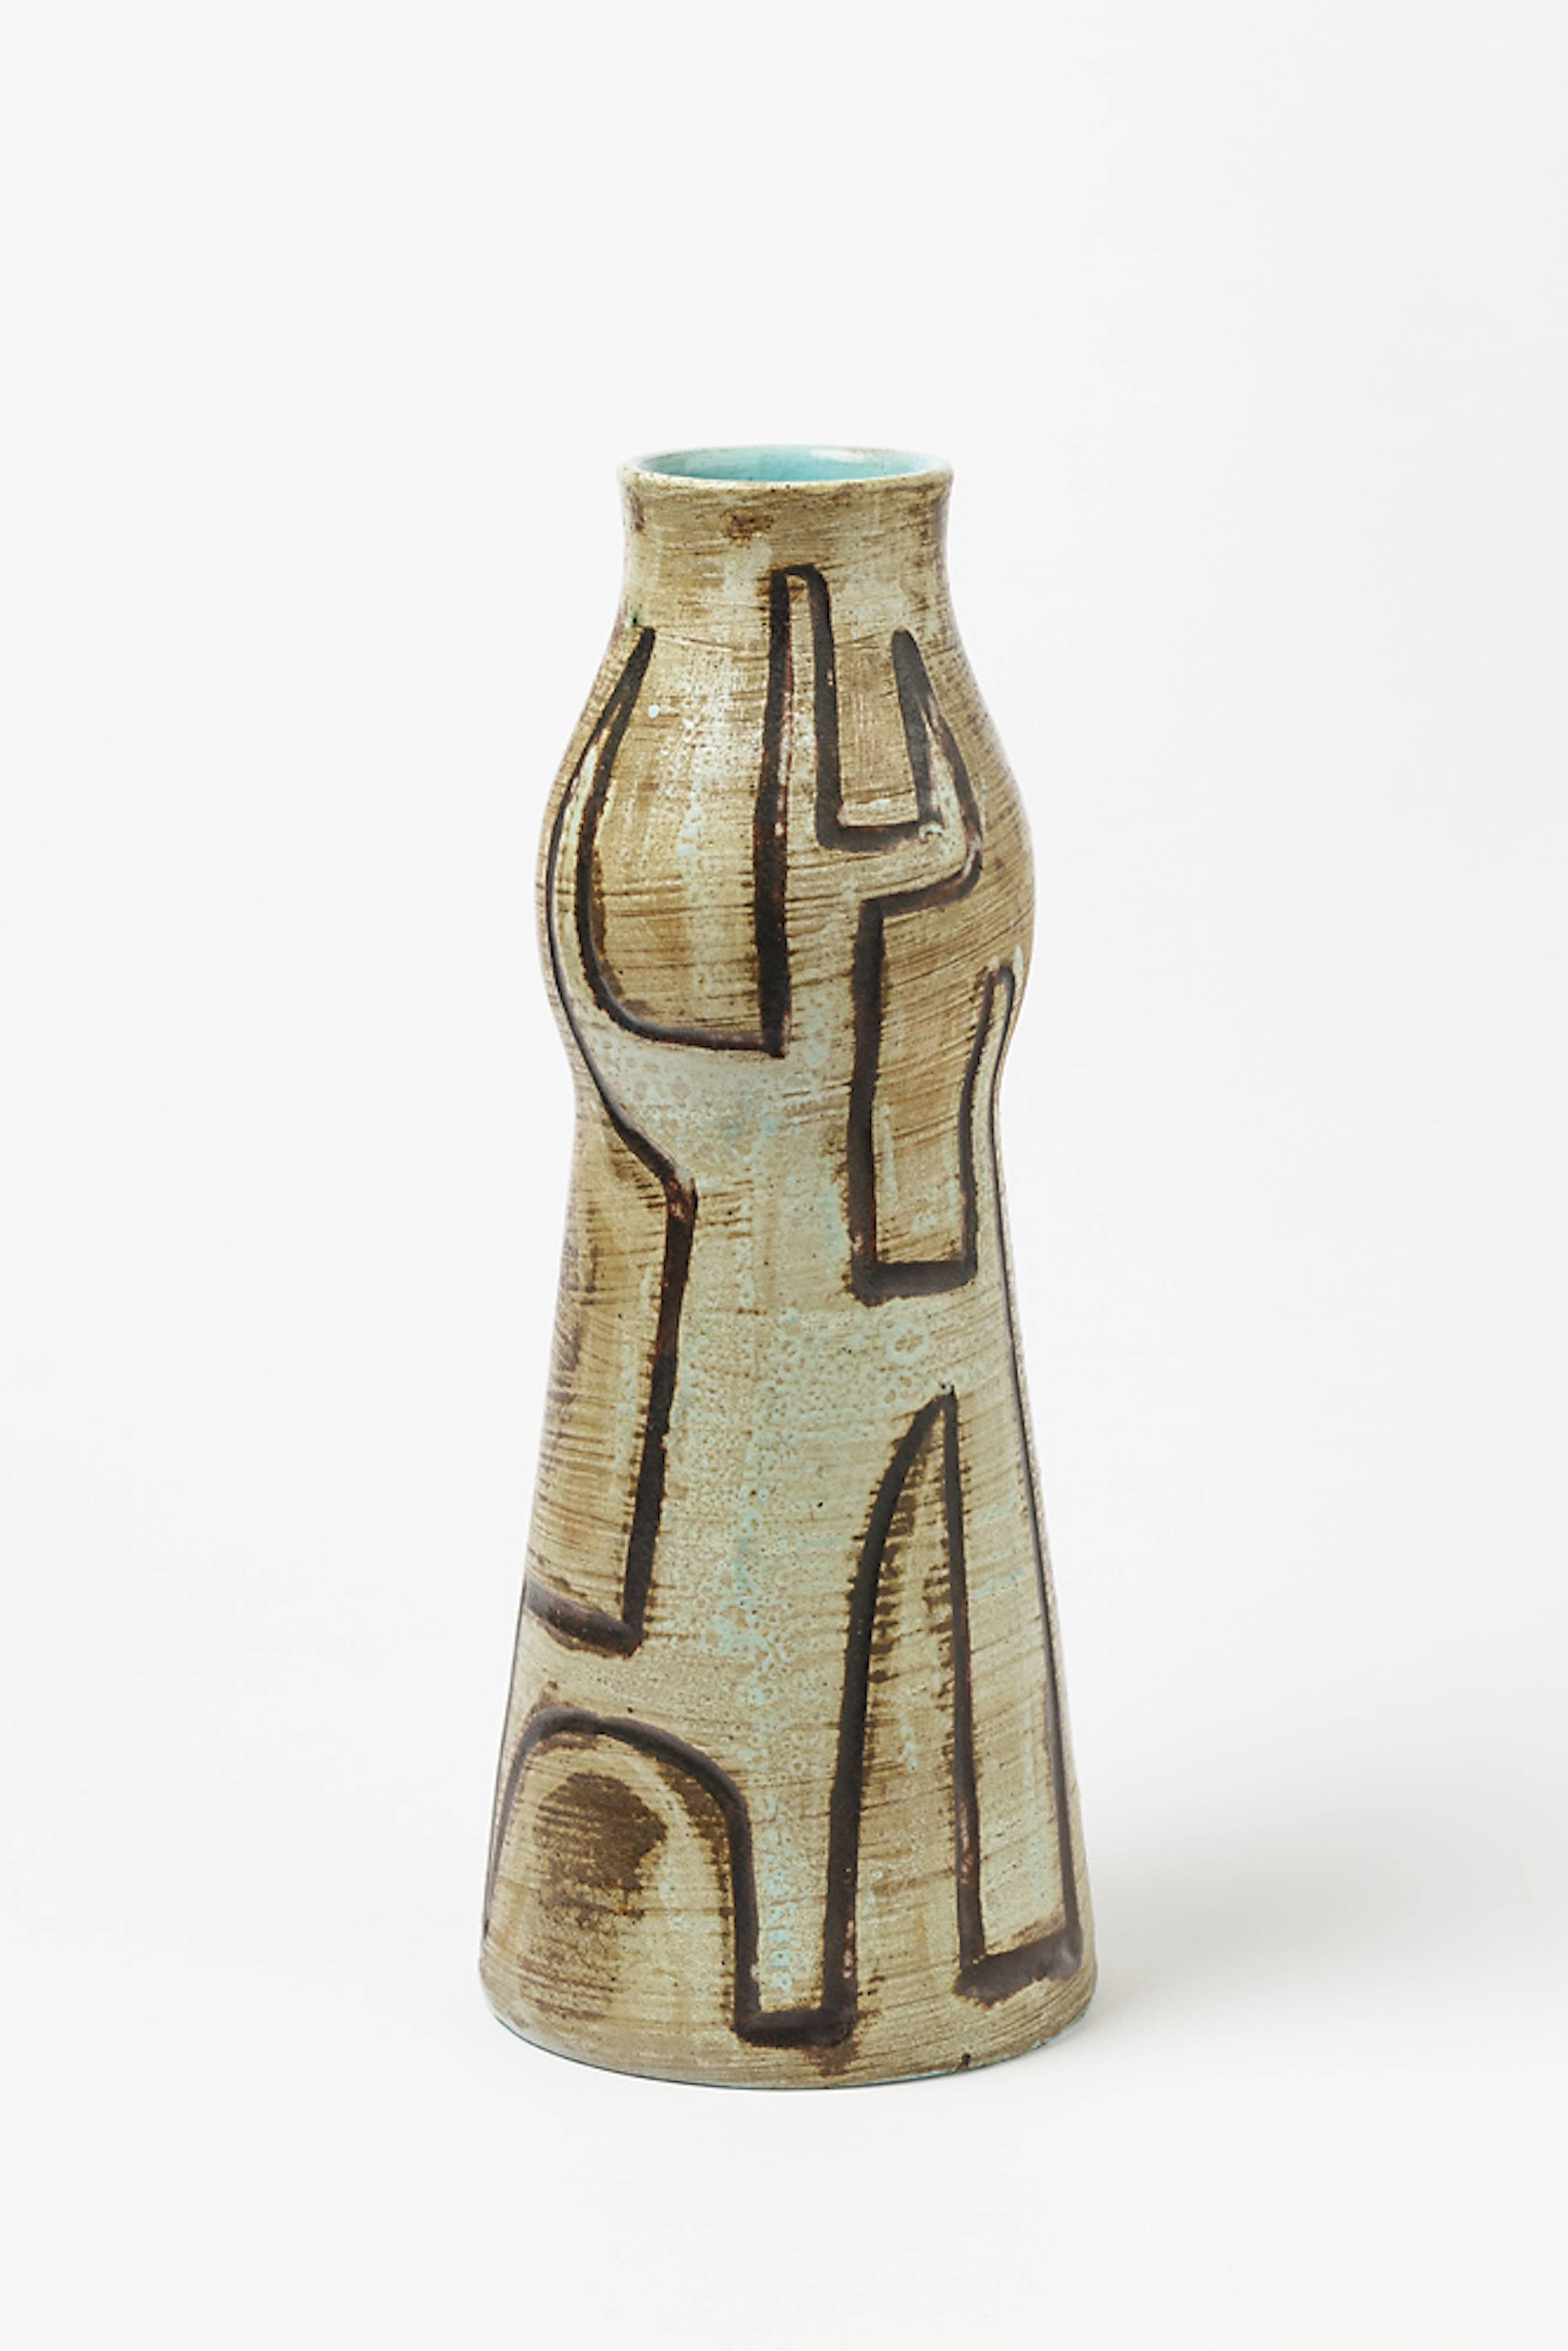 French Extraordinary Ceramic Vase by Accolay, circa 1960-1970, Unique Piece